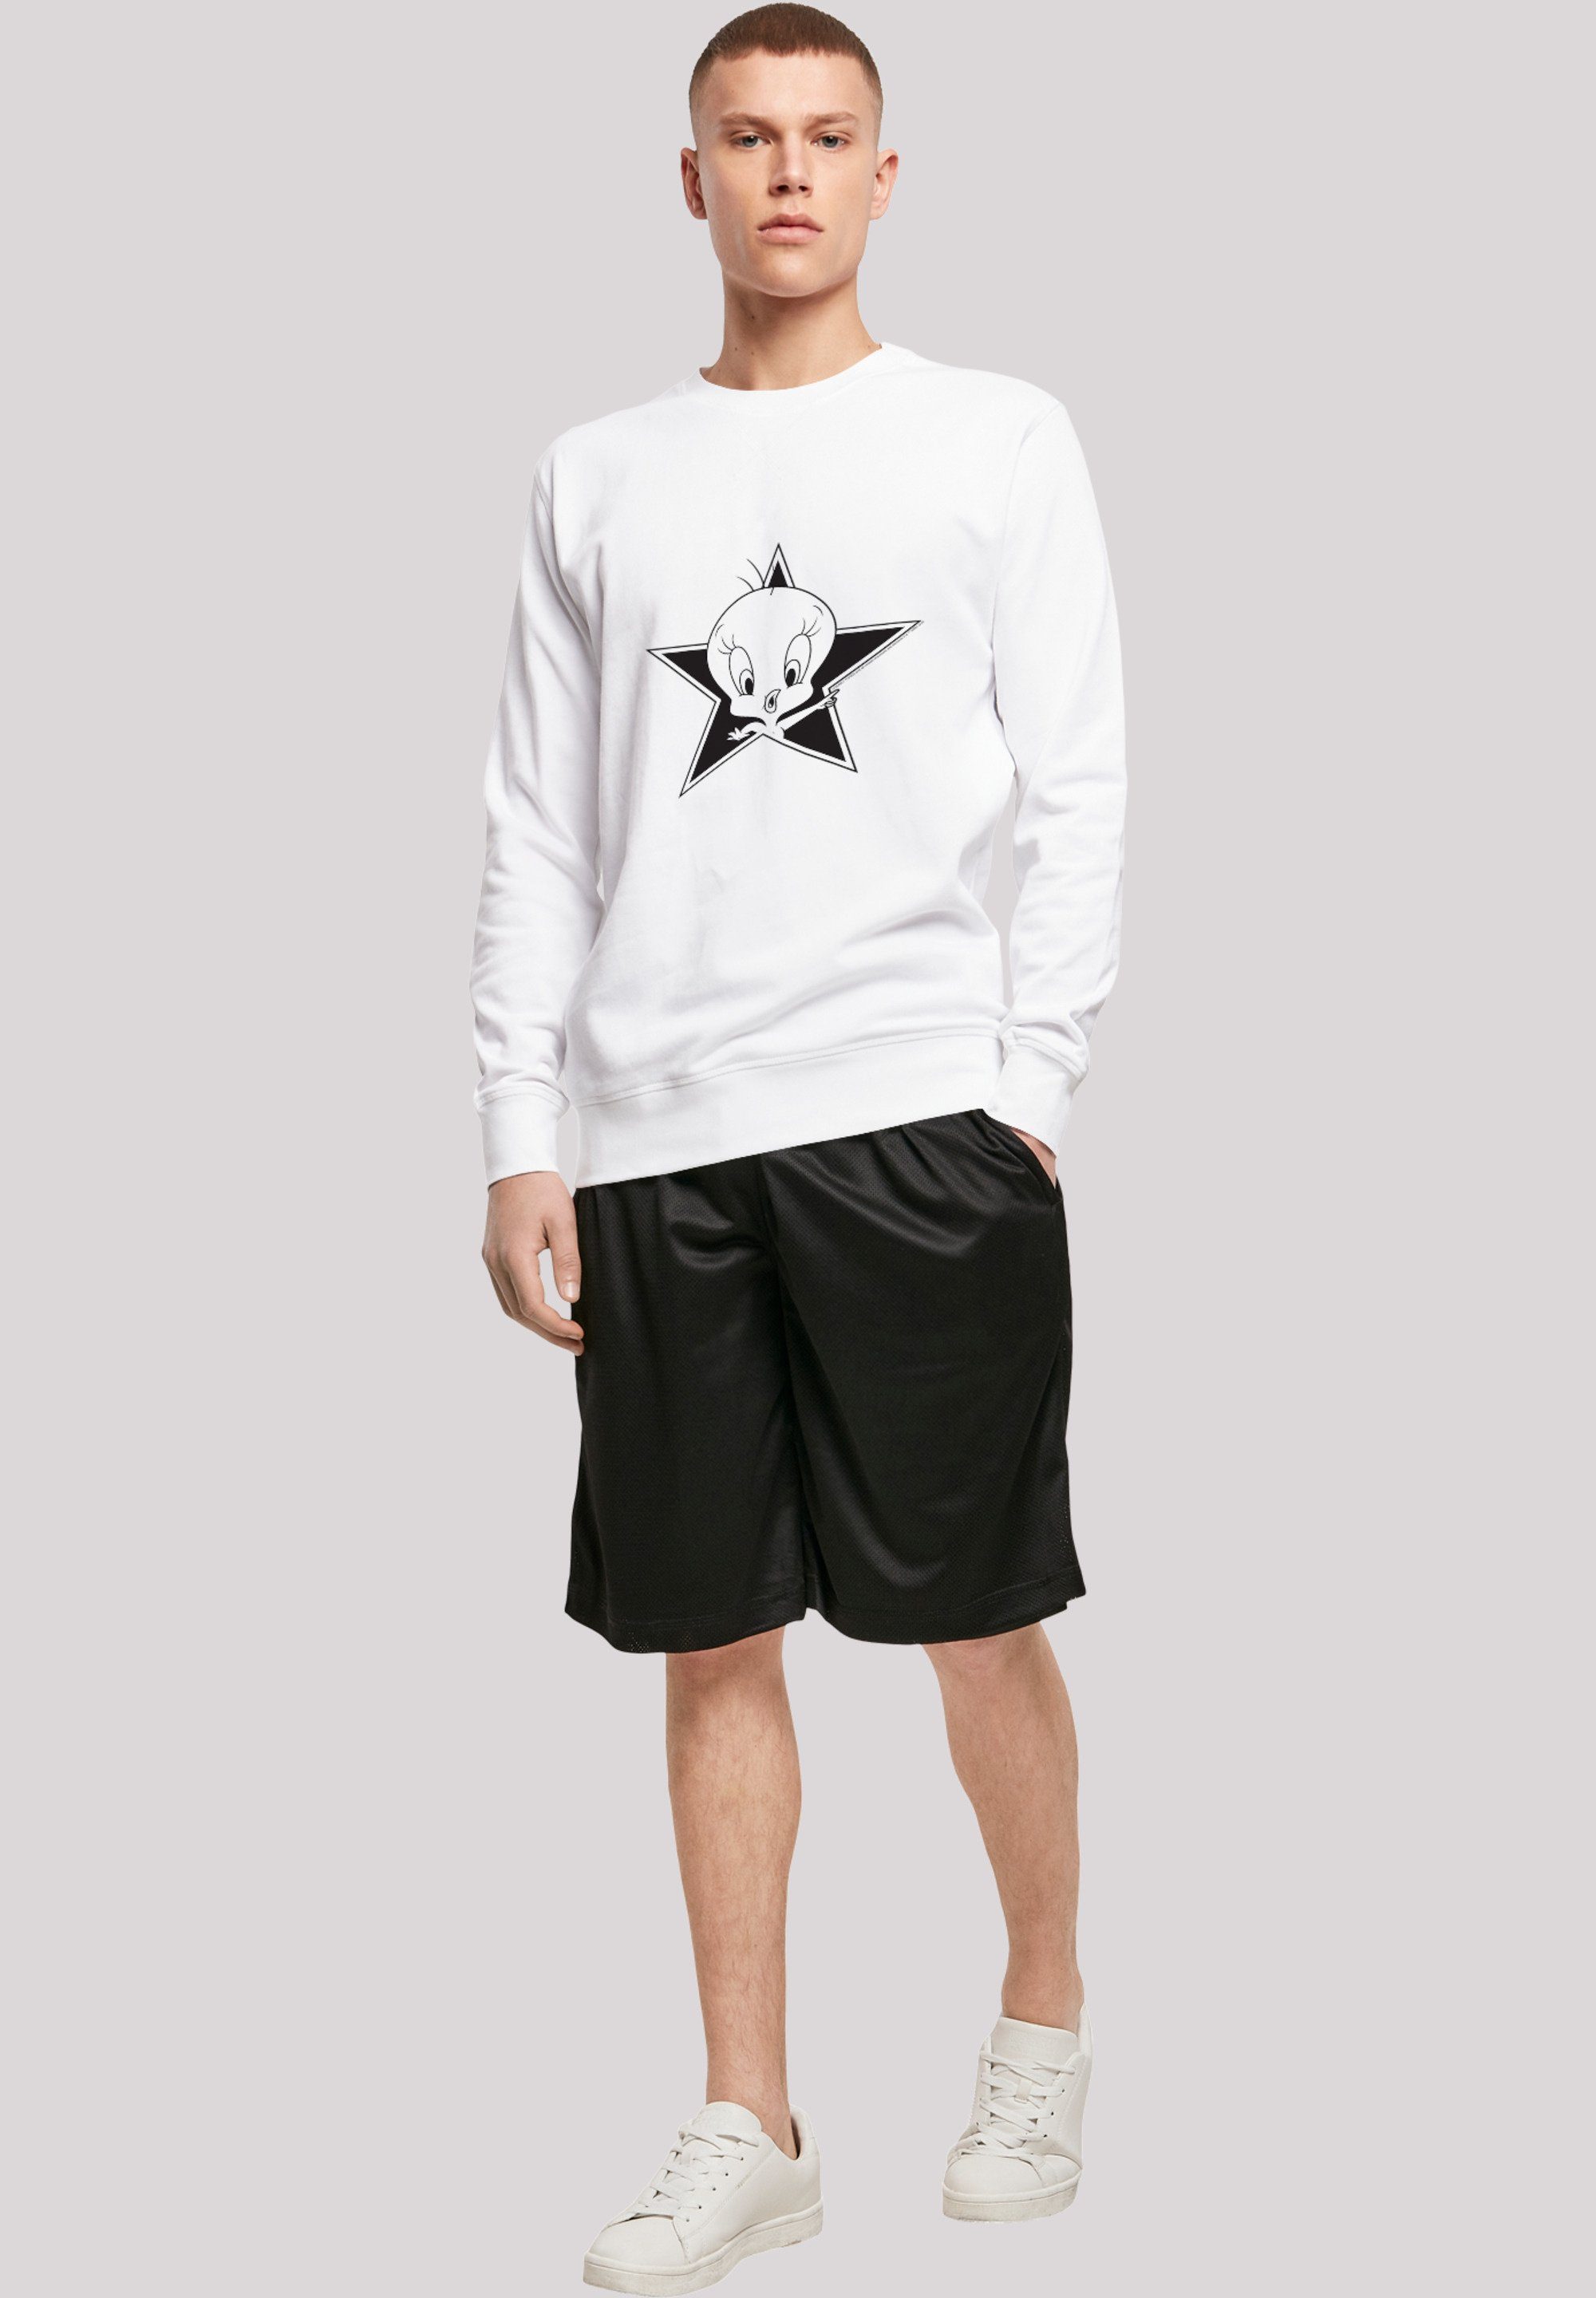 Herren Pullover F4NT4STIC Sweatshirt Sweatshirt 'Looney Tunes Tweetie'